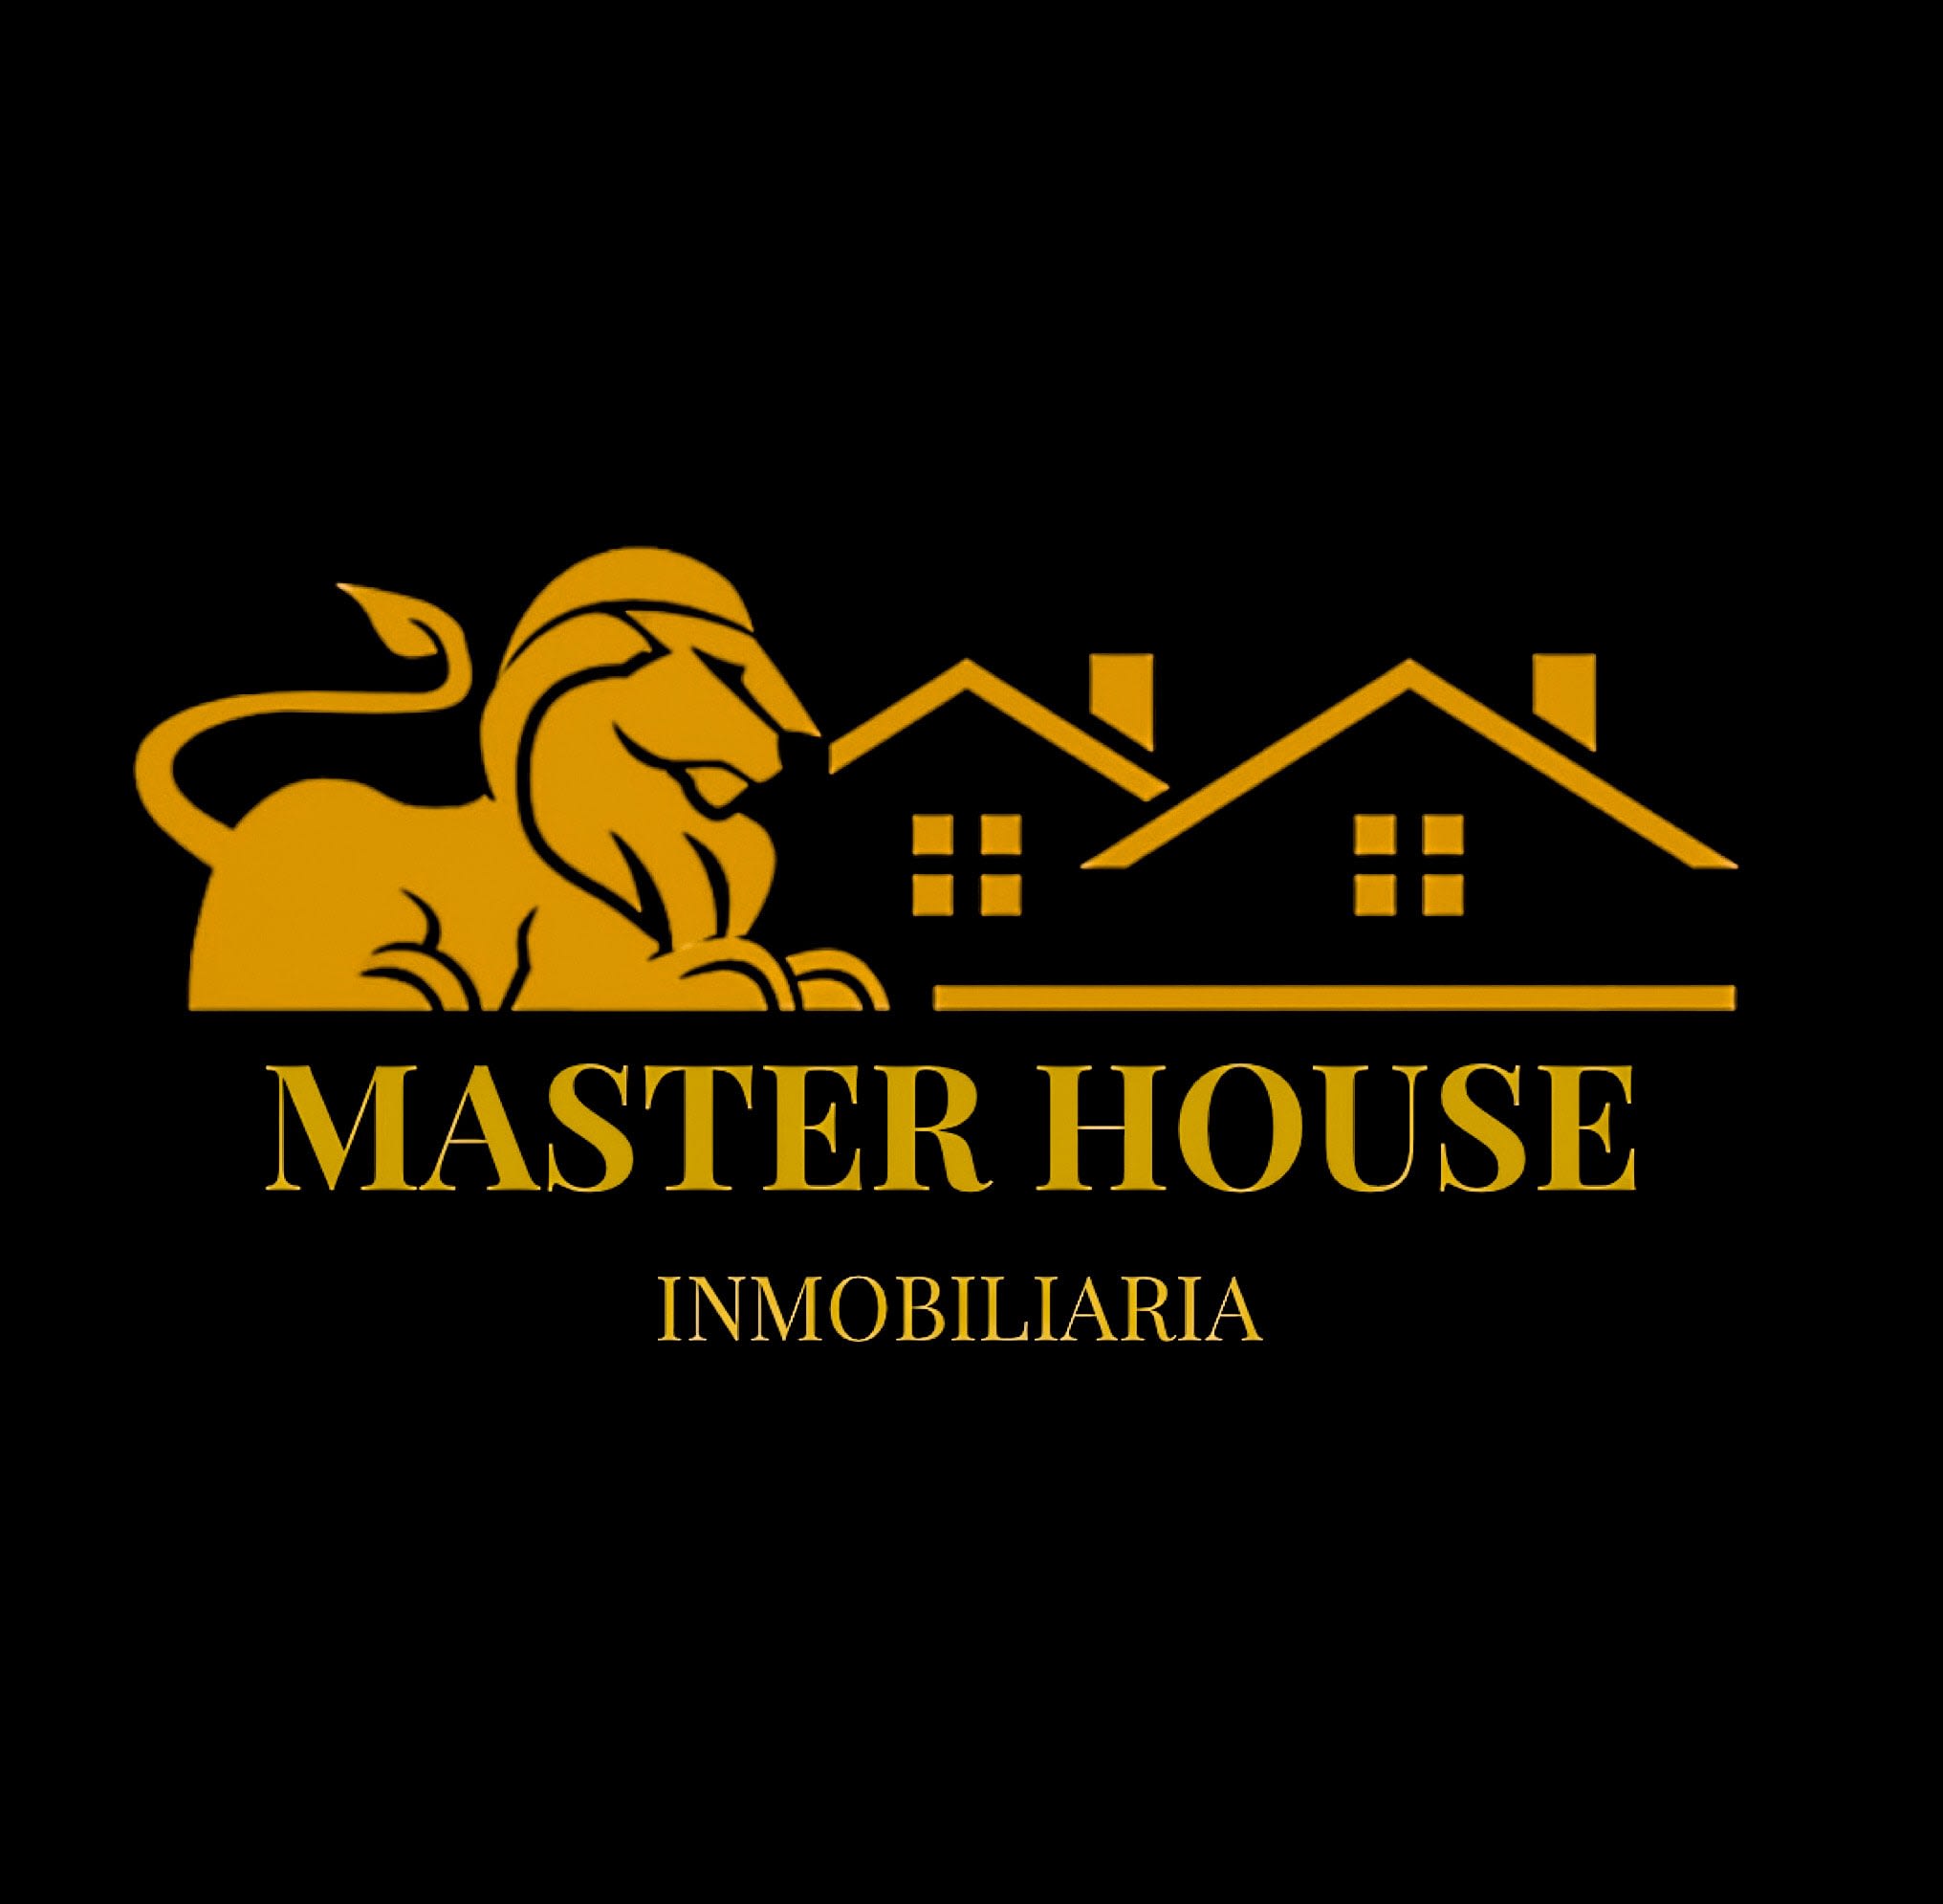 Master House Inmobiliaria